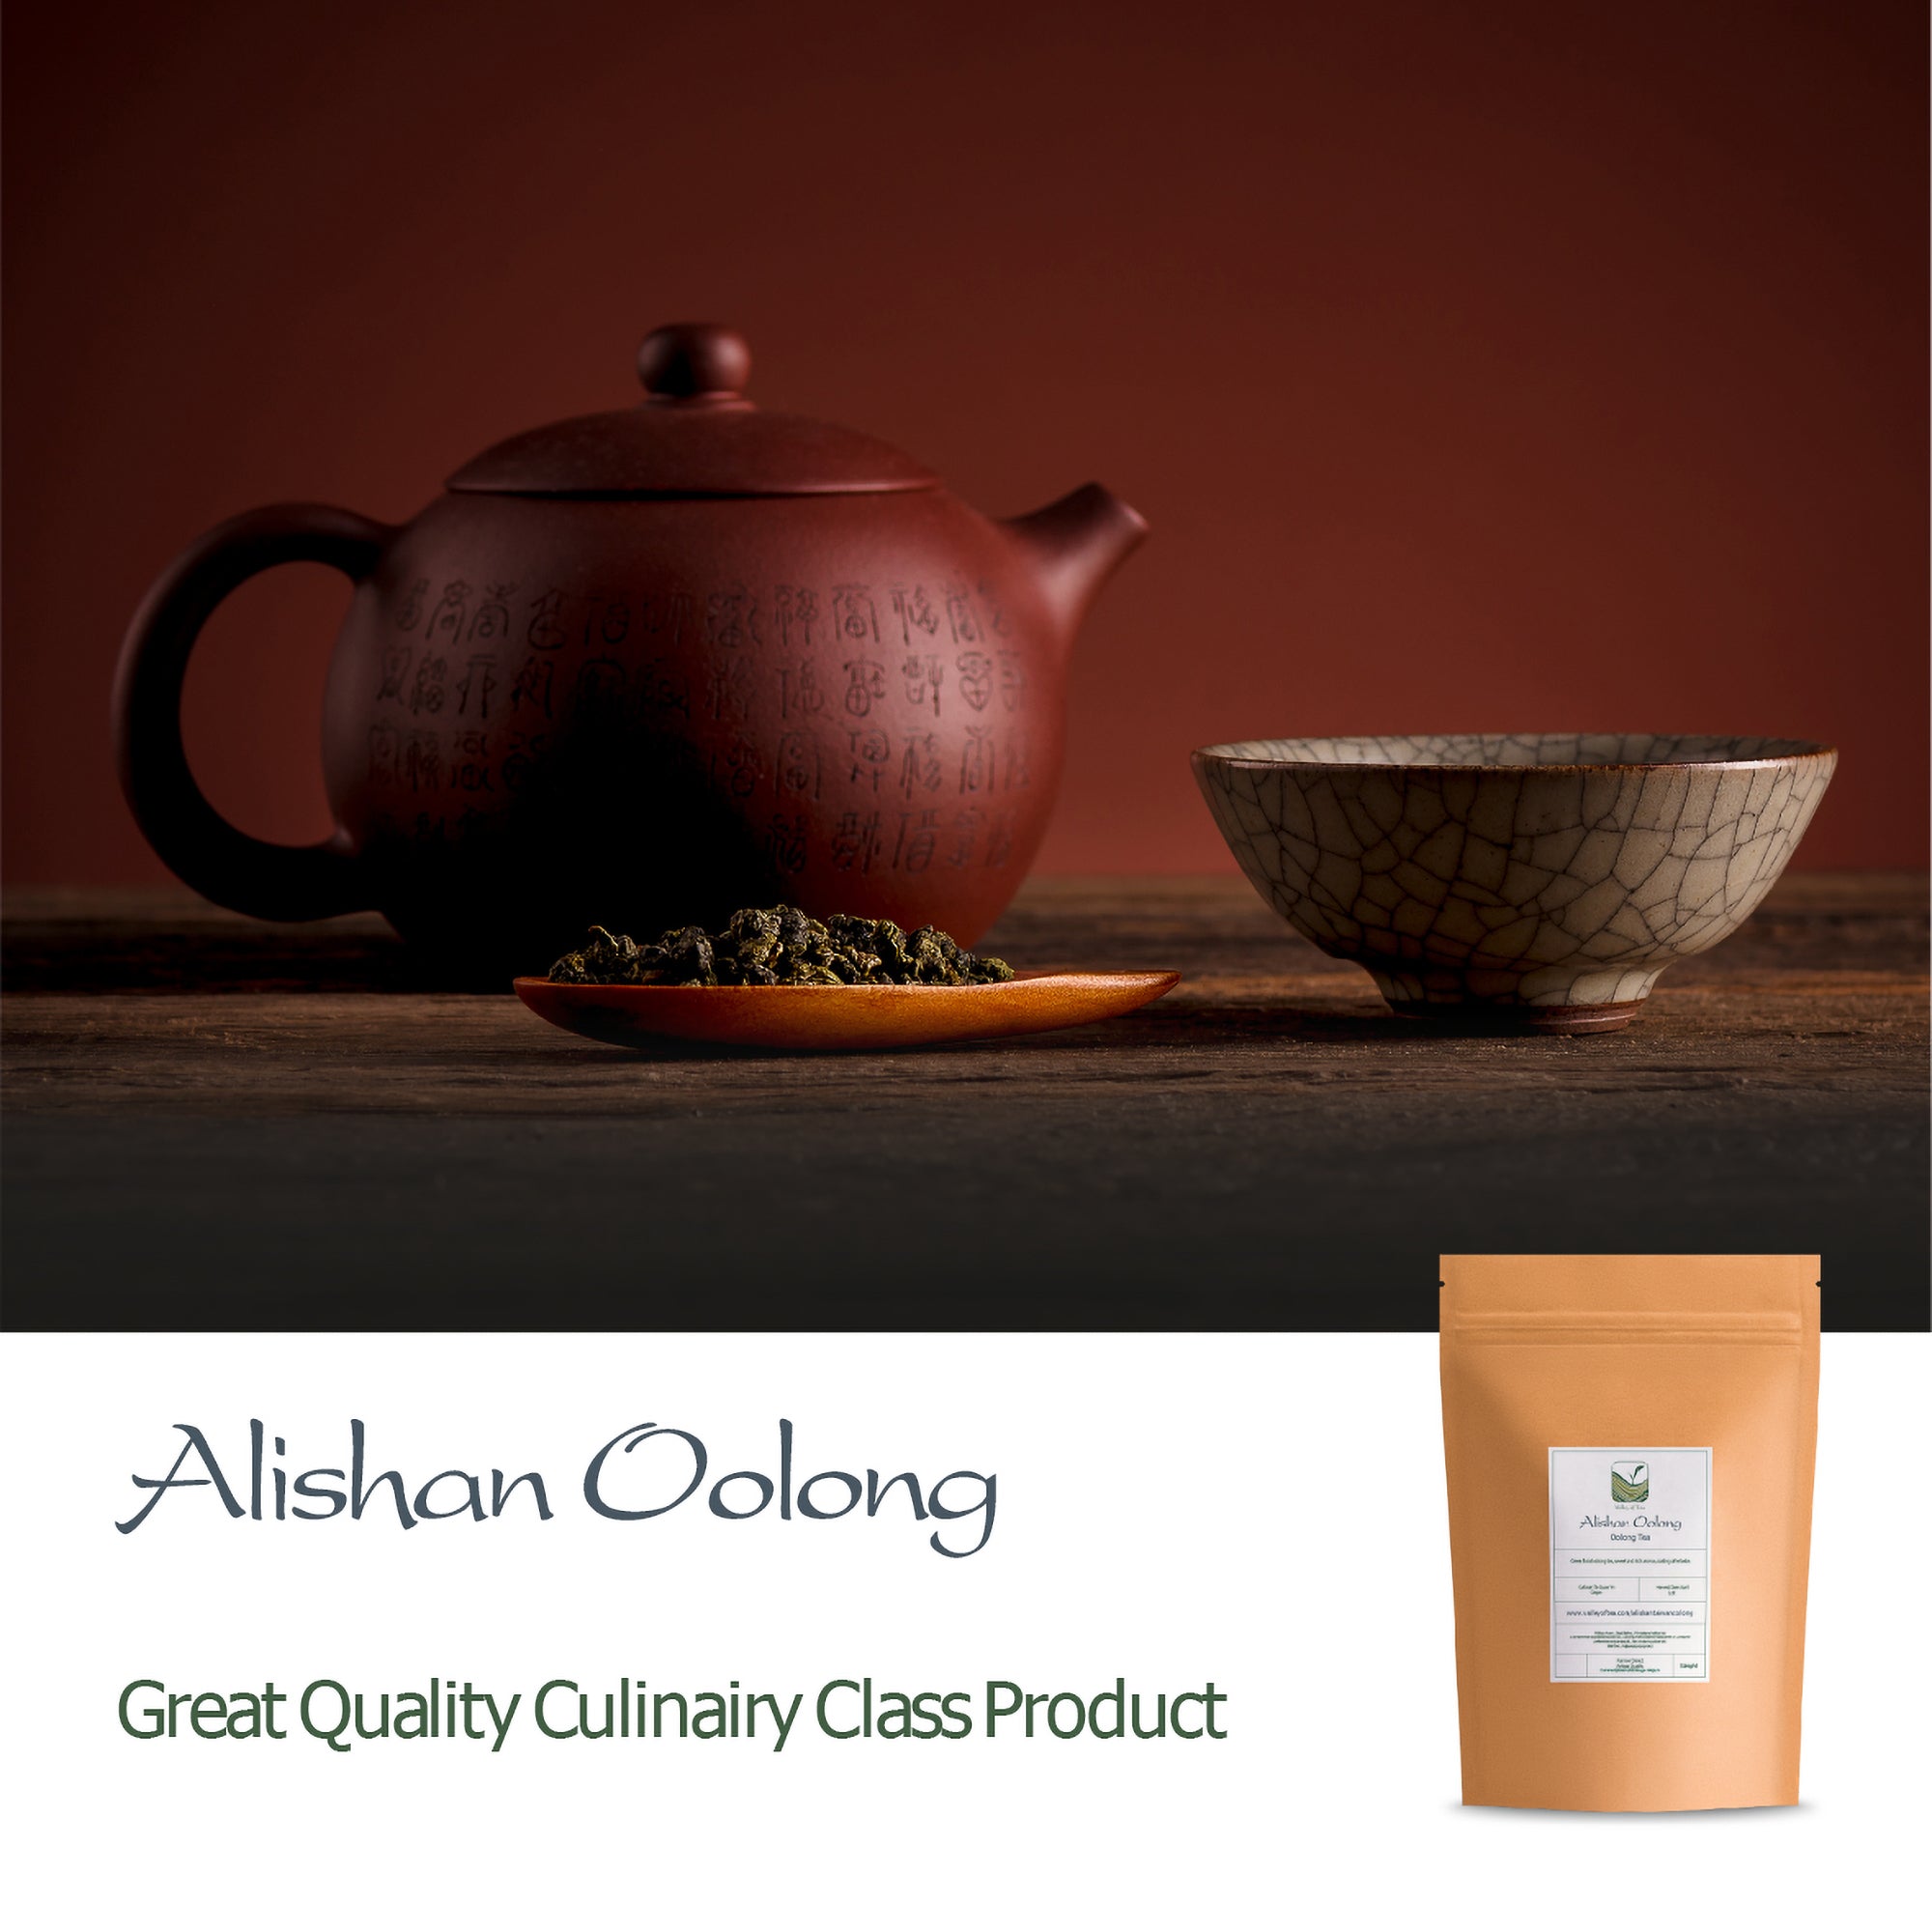 Alishan Oolong - Valley of Tea